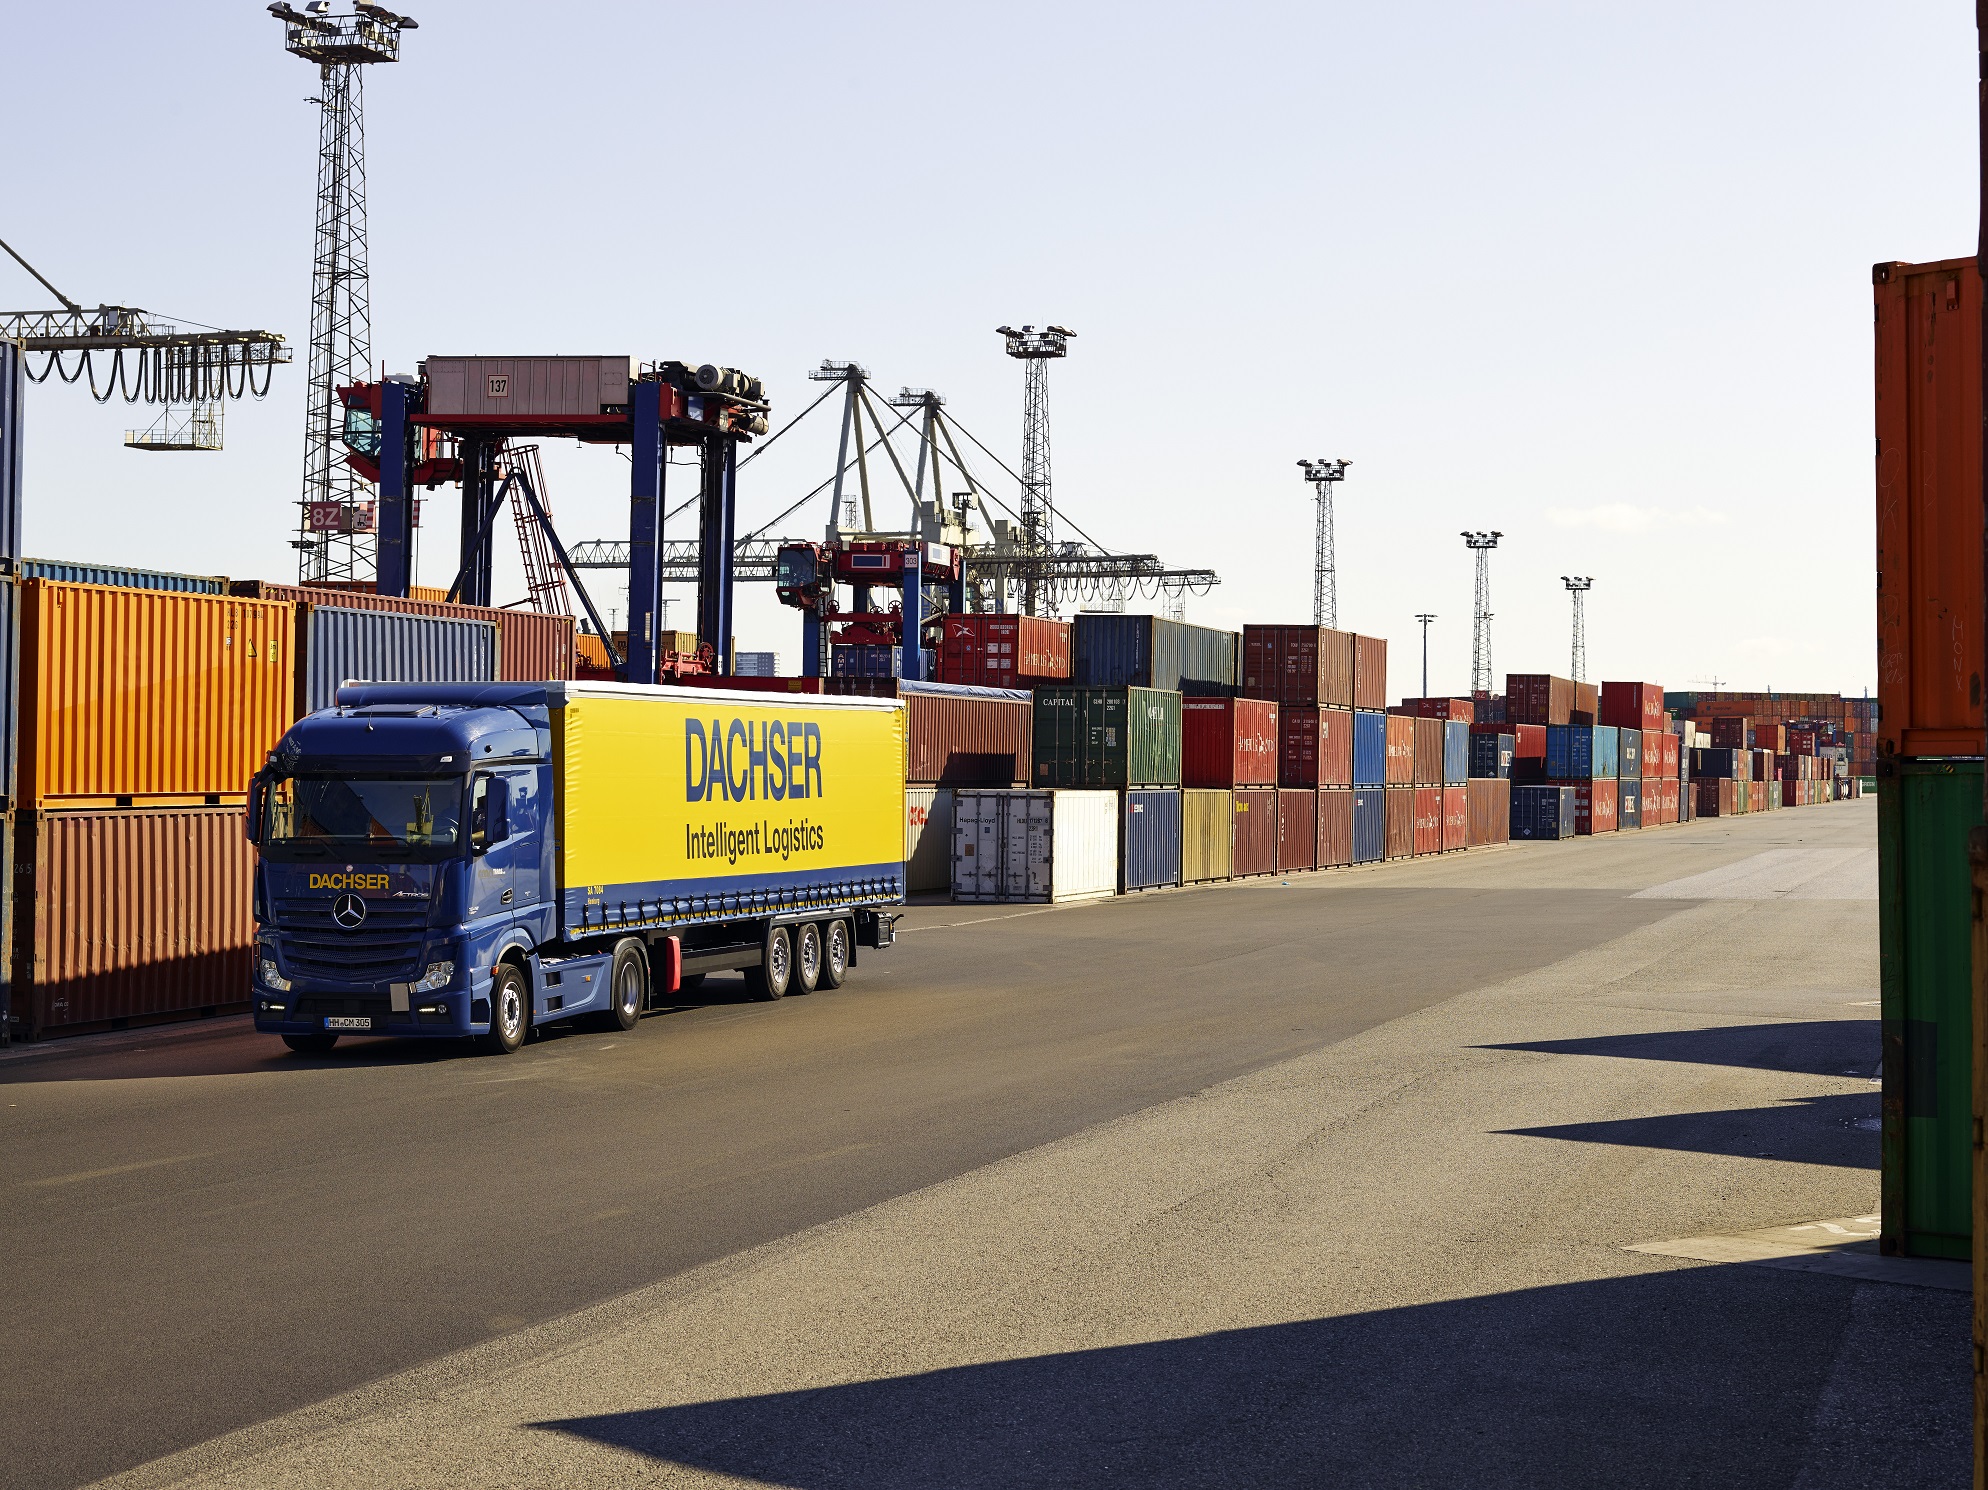 Mezinárodní logistický provider DACHSER má vlastní speciální řešení pro zásilky s nebezpečným zbožím